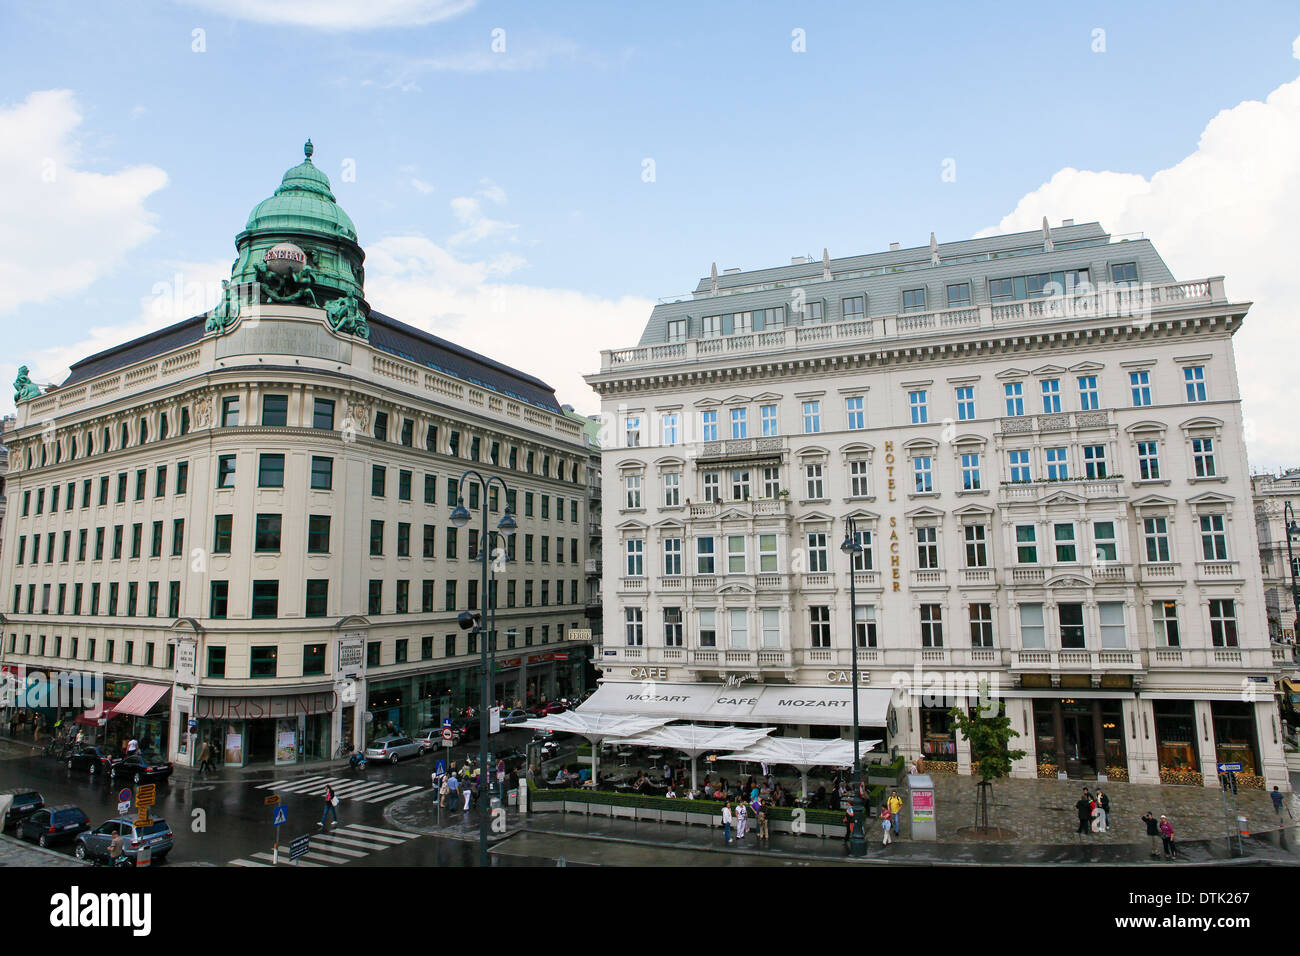 L'hôtel Sacher, un hôtel cinq étoiles situé dans le quartier Josefstadt de Vienne, Autriche, à côté de l'Opéra de Vienne Banque D'Images